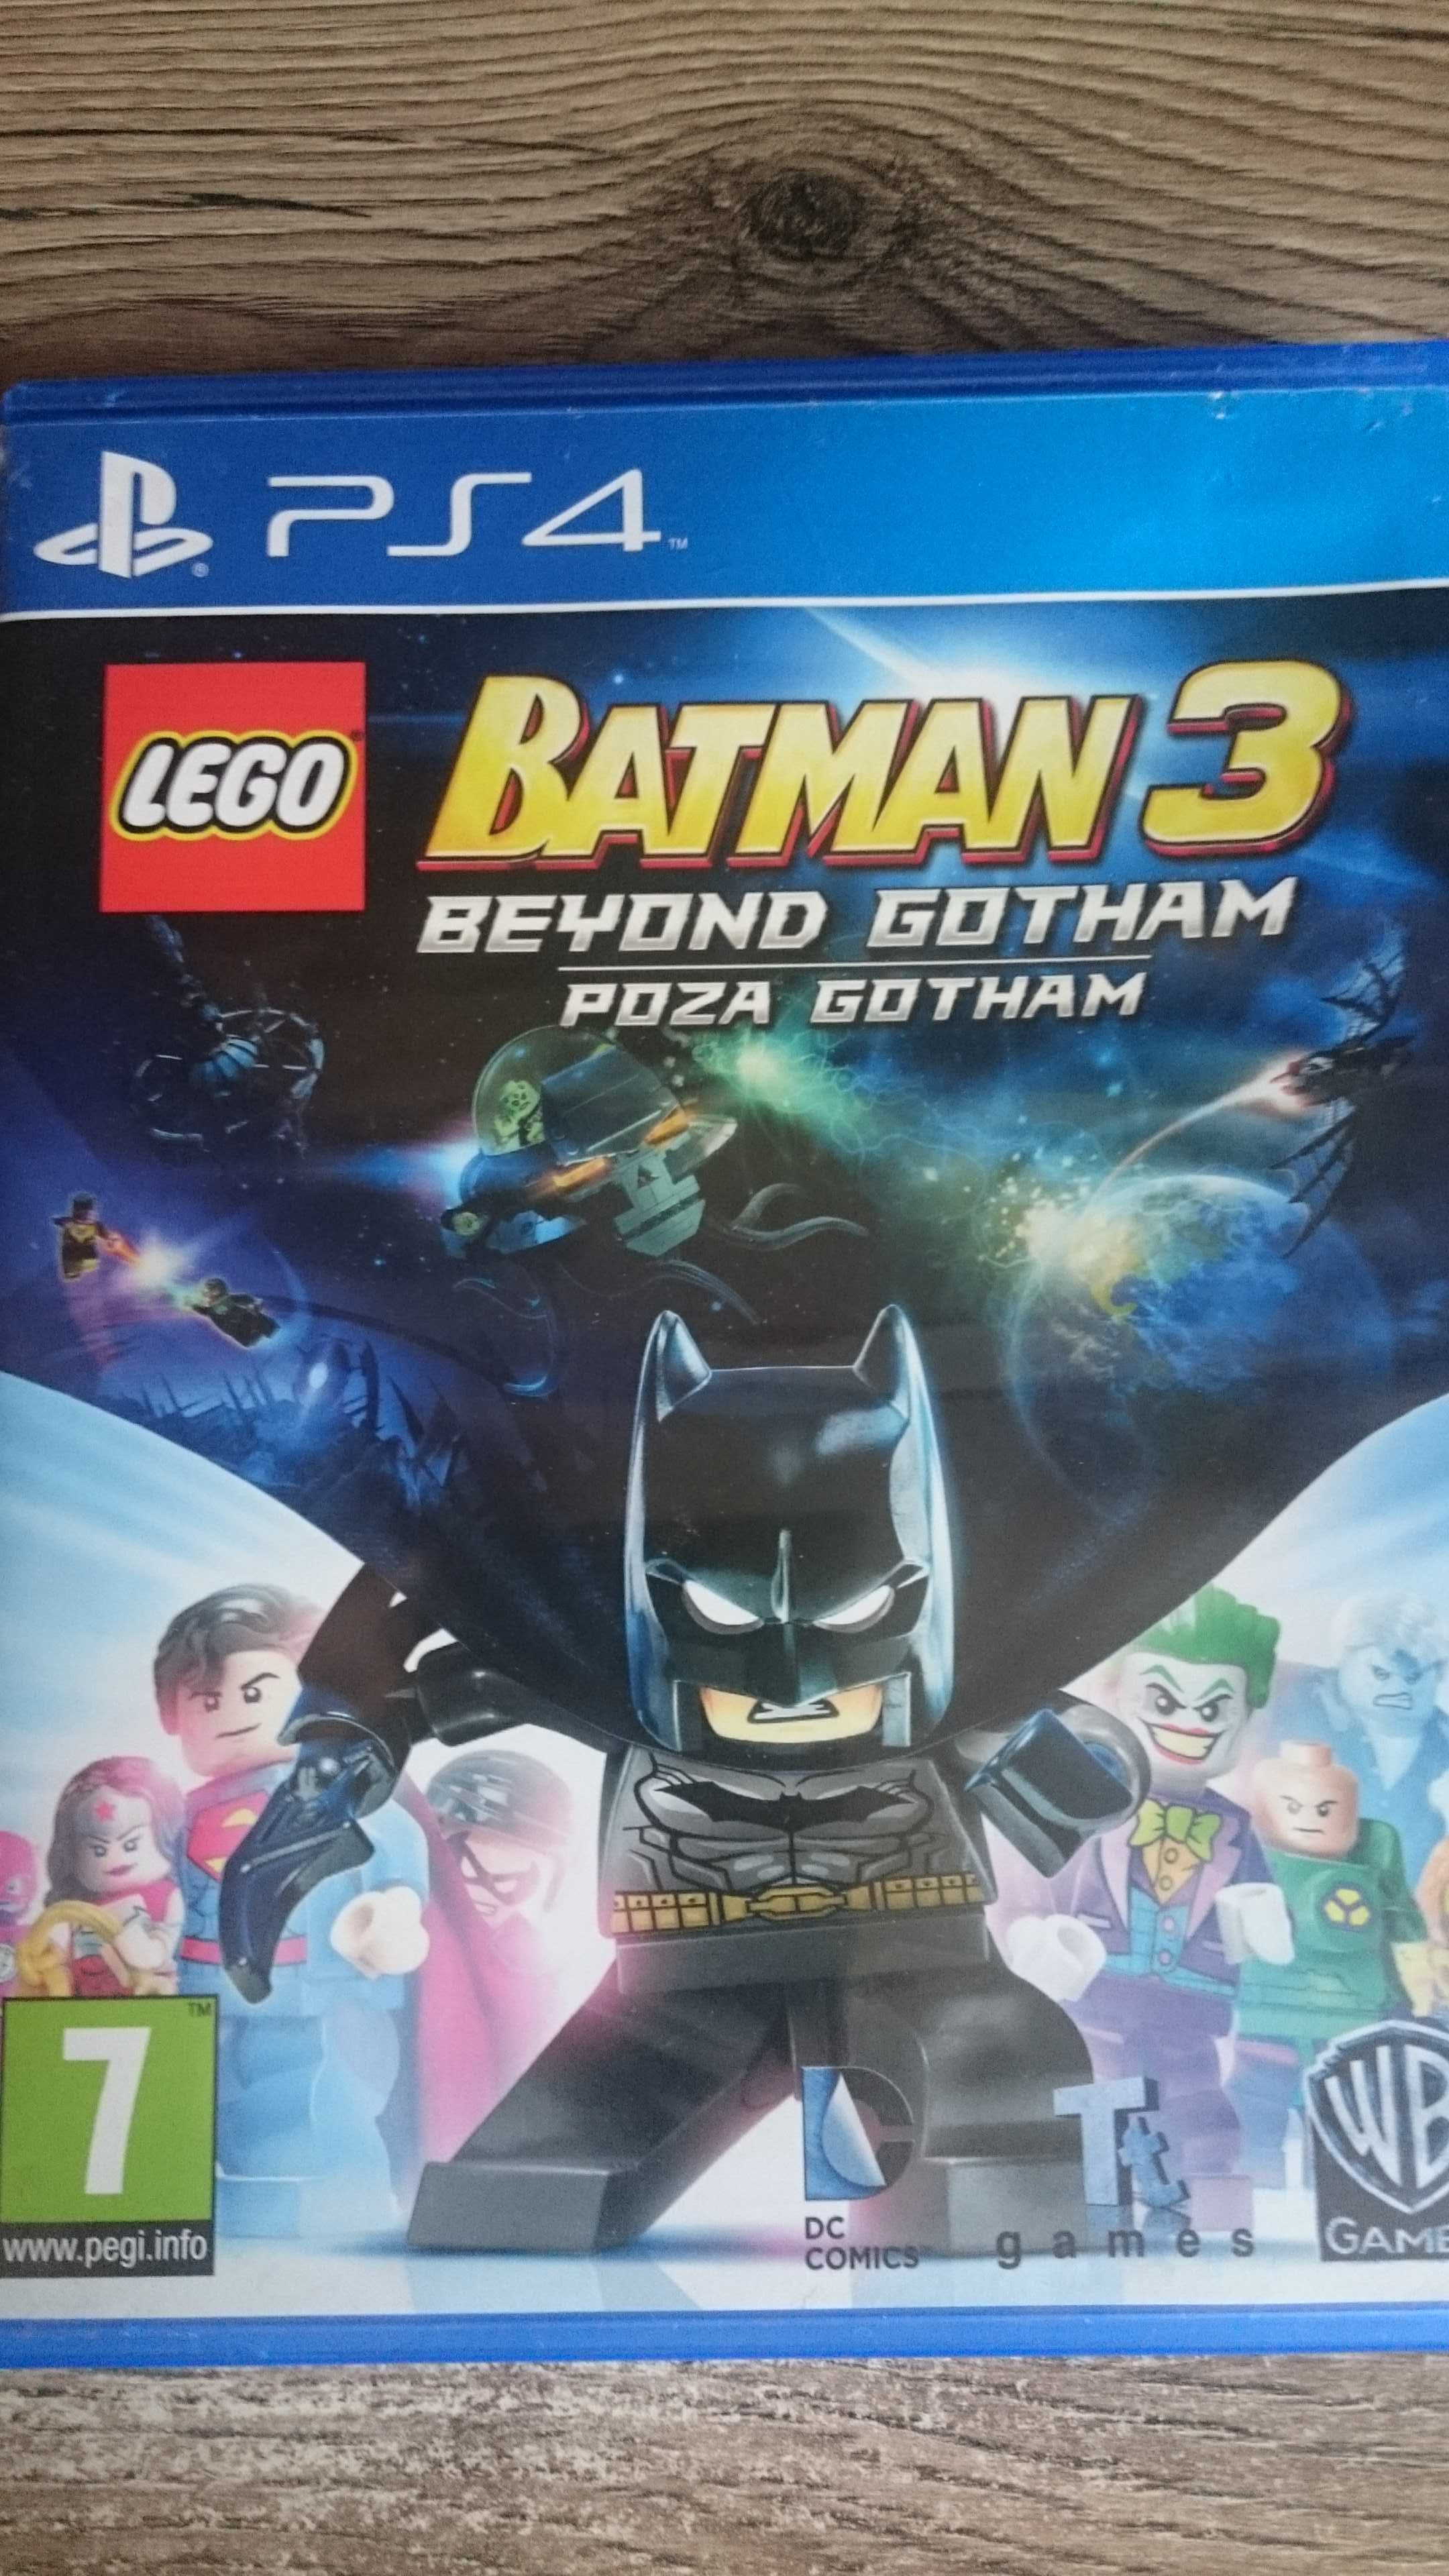 Lego Batman 3 Poza Gotham polska wersja PS4 Playstation 4 Marvel